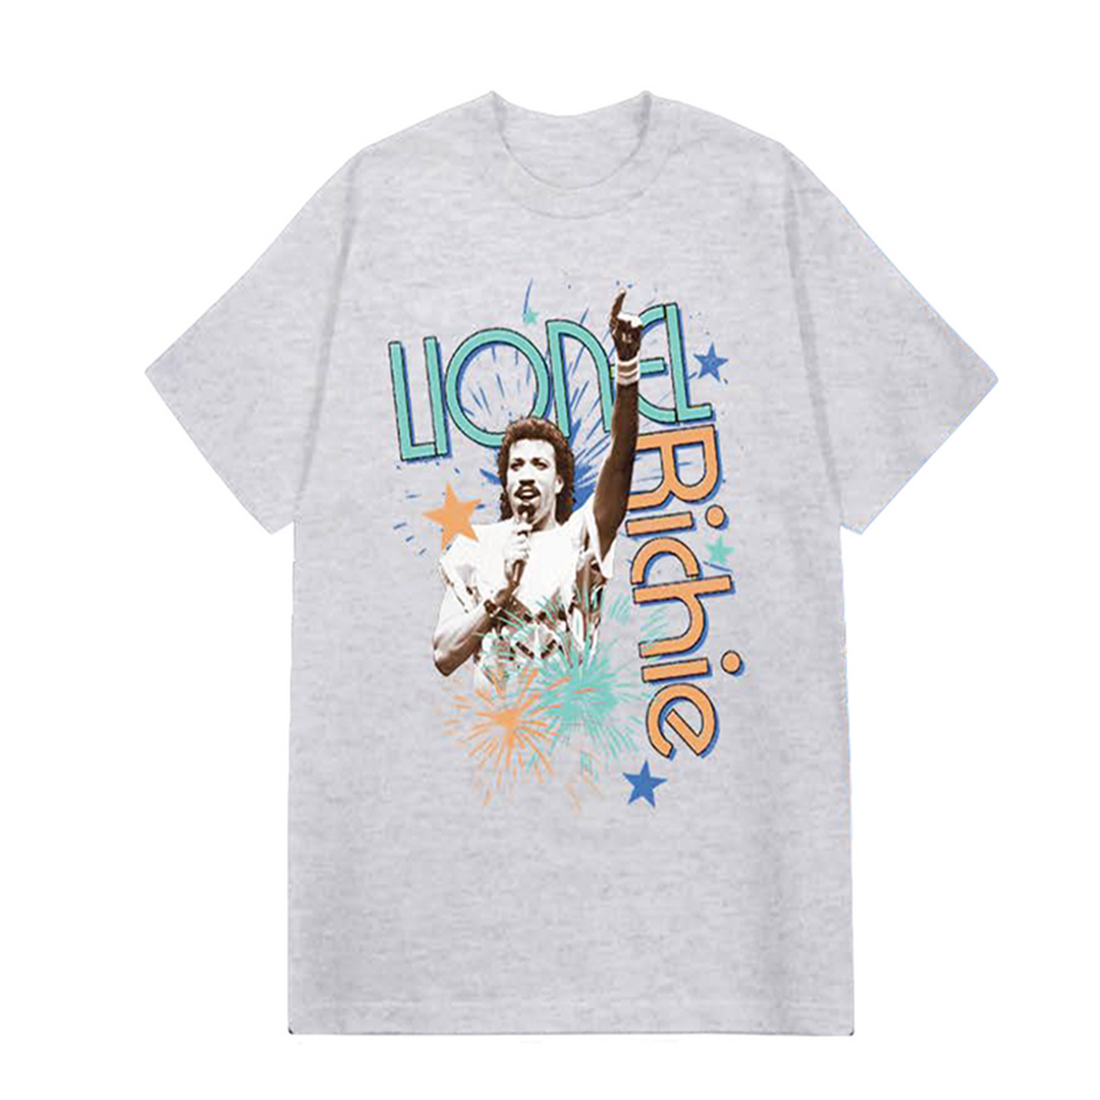 Lionel Richie Fireworks Tour T-Shirt